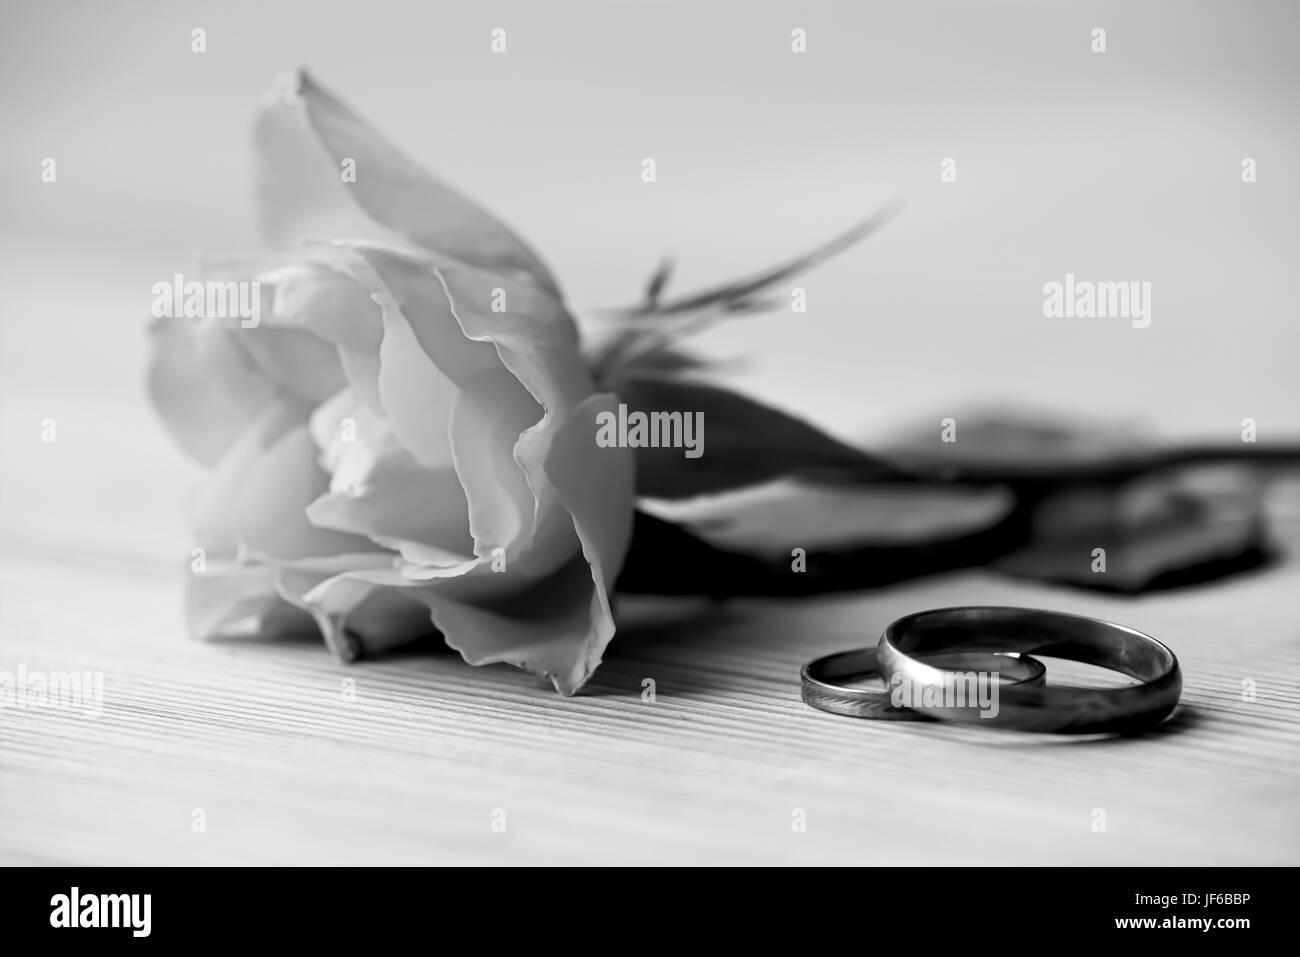 Rose e gli anelli di nozze giacciono su un tavolo Foto Stock